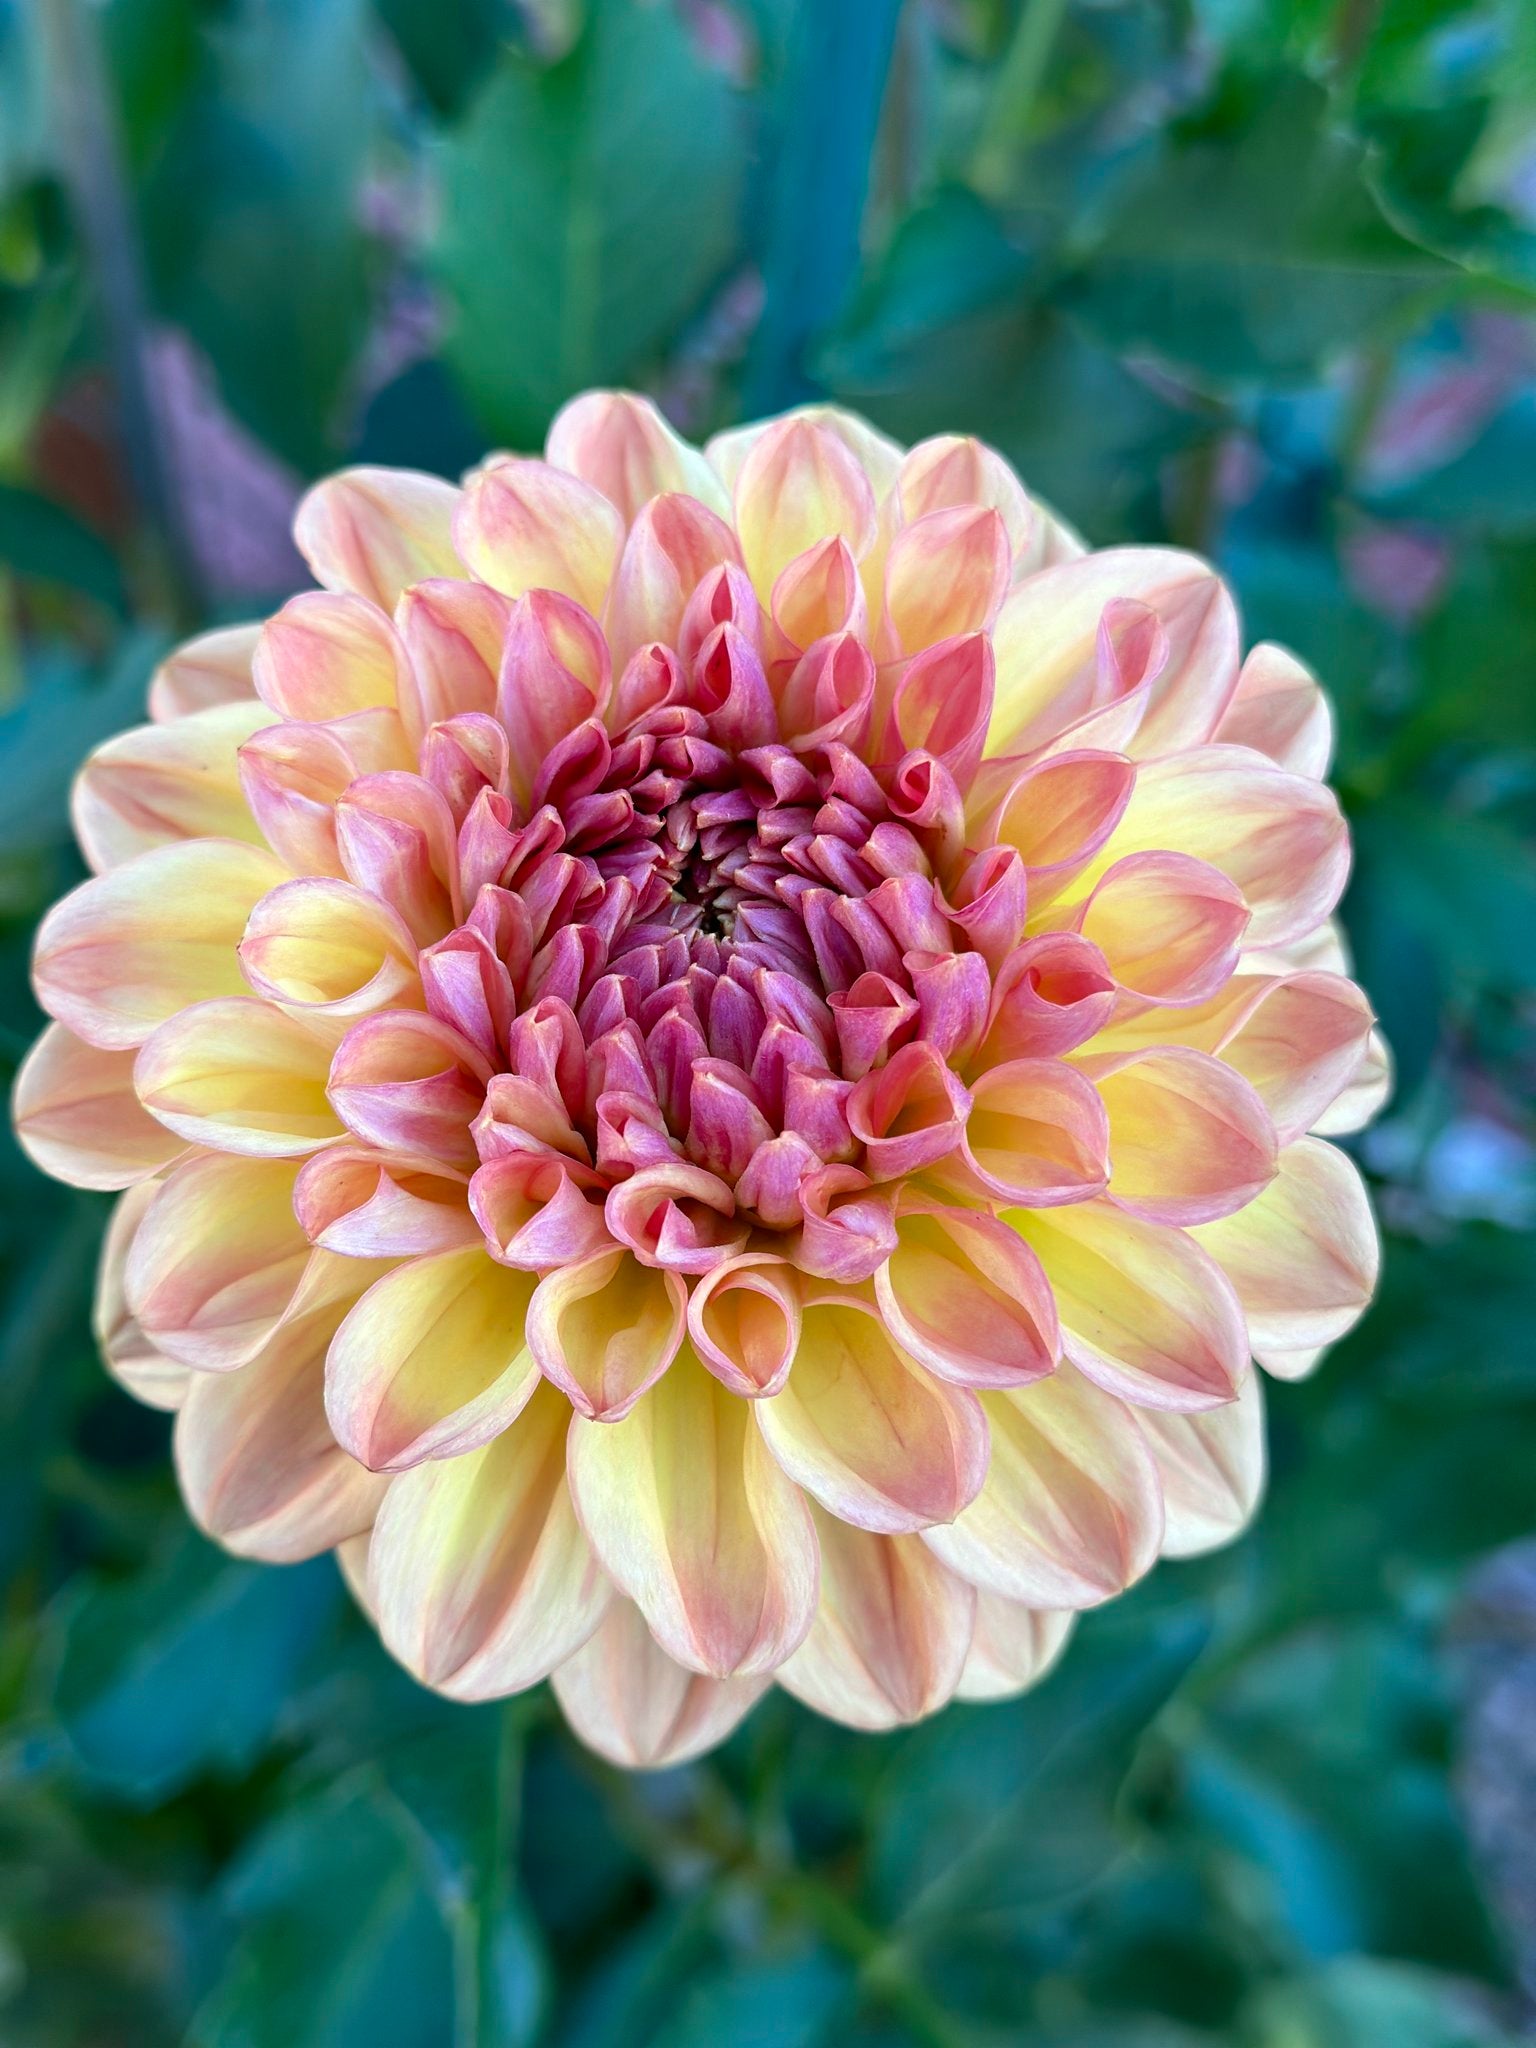 Dahlia Flower, Dahlia Tubers